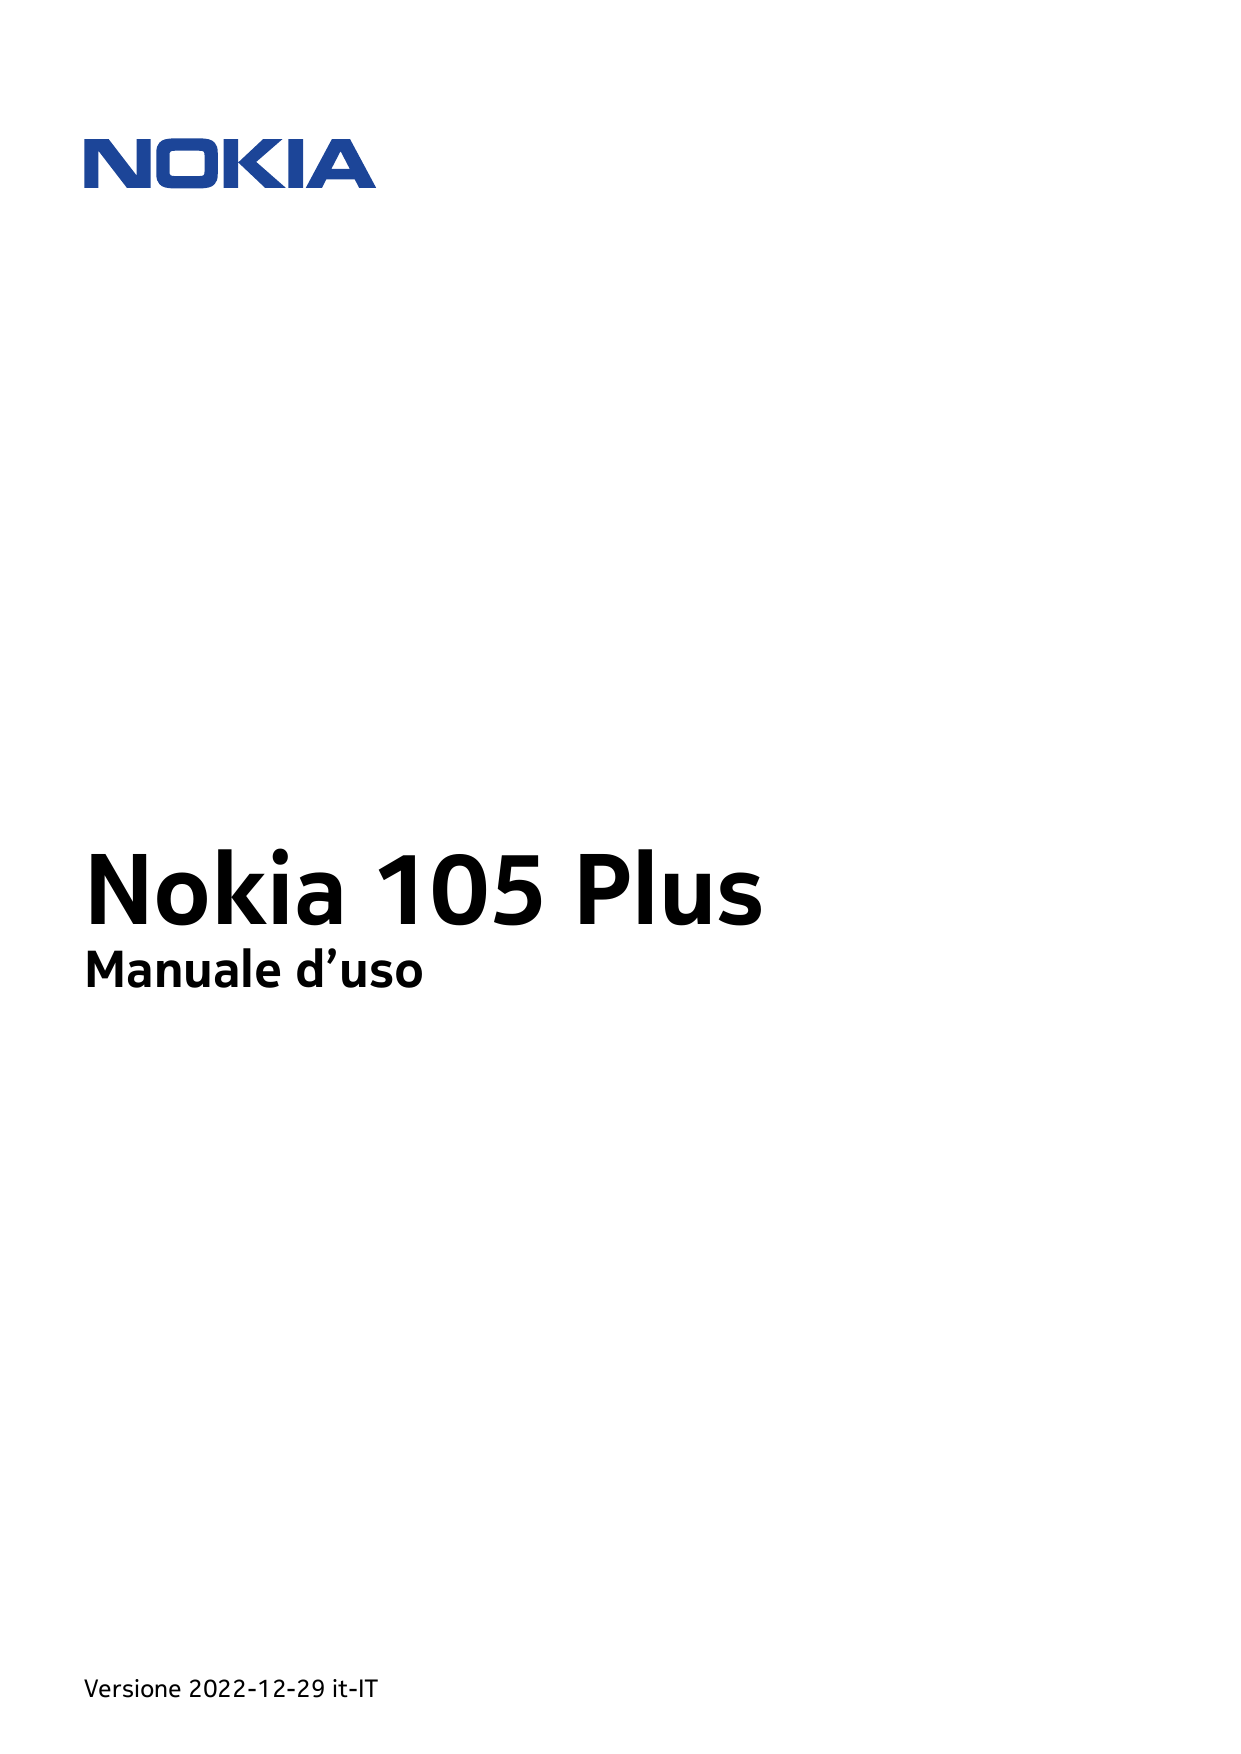 Nokia 105 PlusManuale d’usoVersione 2022-12-29 it-IT